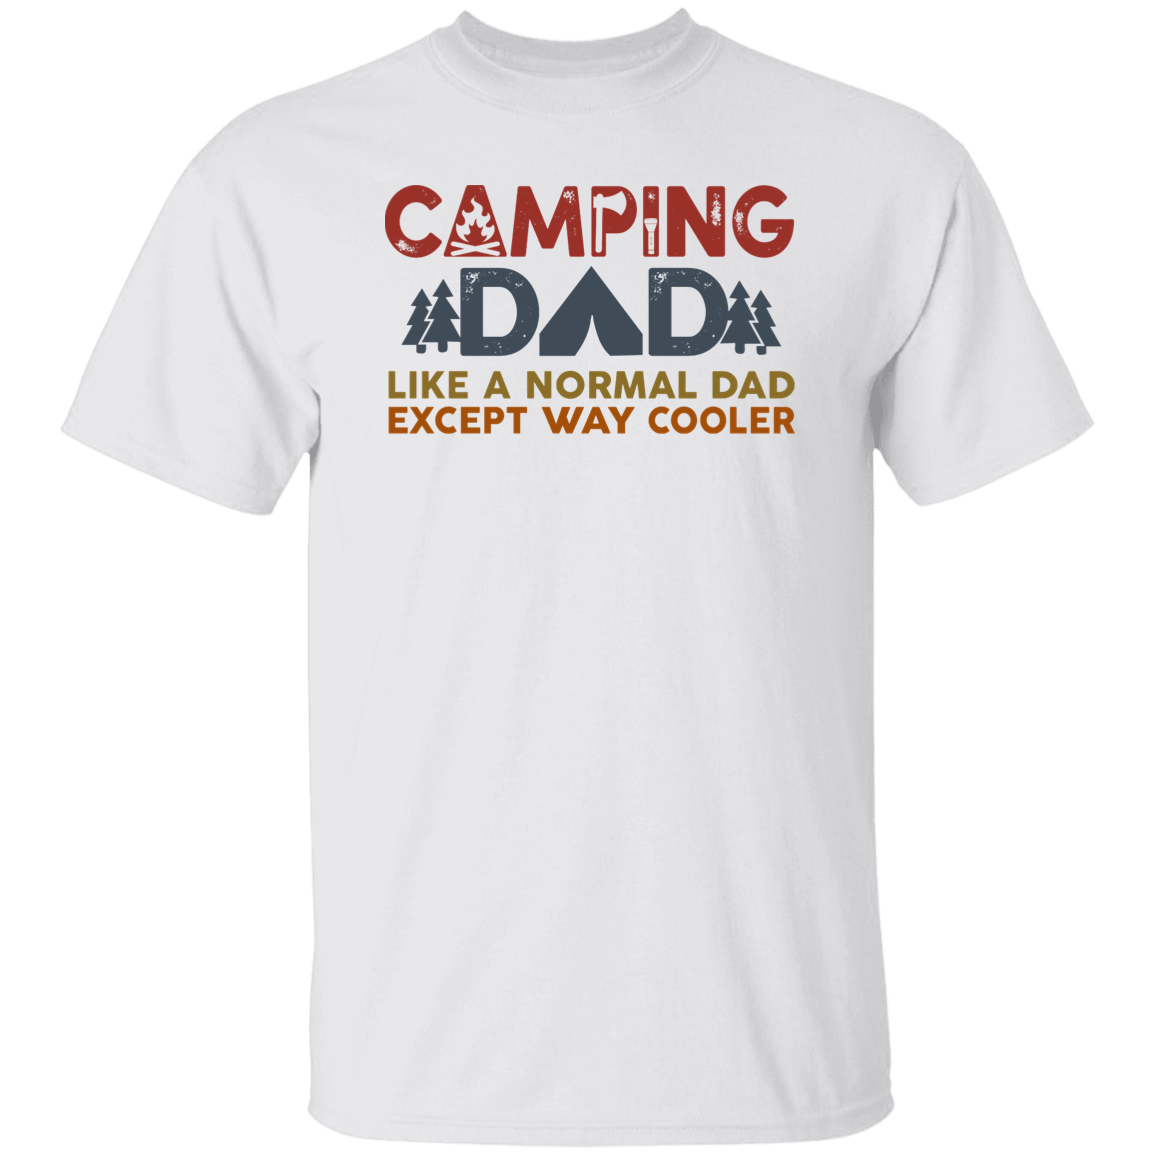 Camping Dad T-Shirt